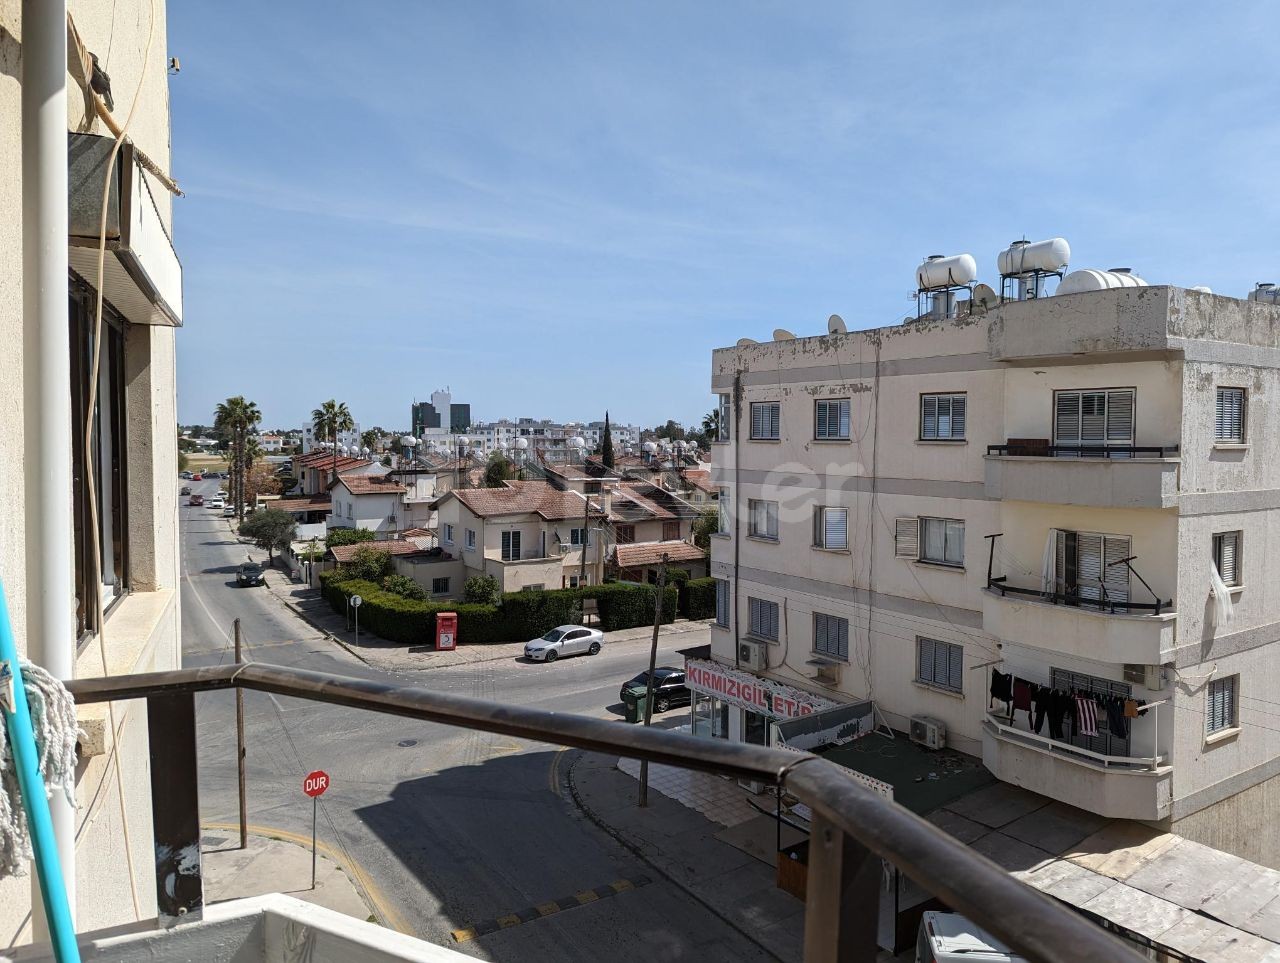 یک موقعیت خوب، در گوچمنکوی، کوچانلی ترکیه، 3+1، 125 متر مربع، روی صلیب دورتیول، آپارتمان به خوبی نگهداری شده